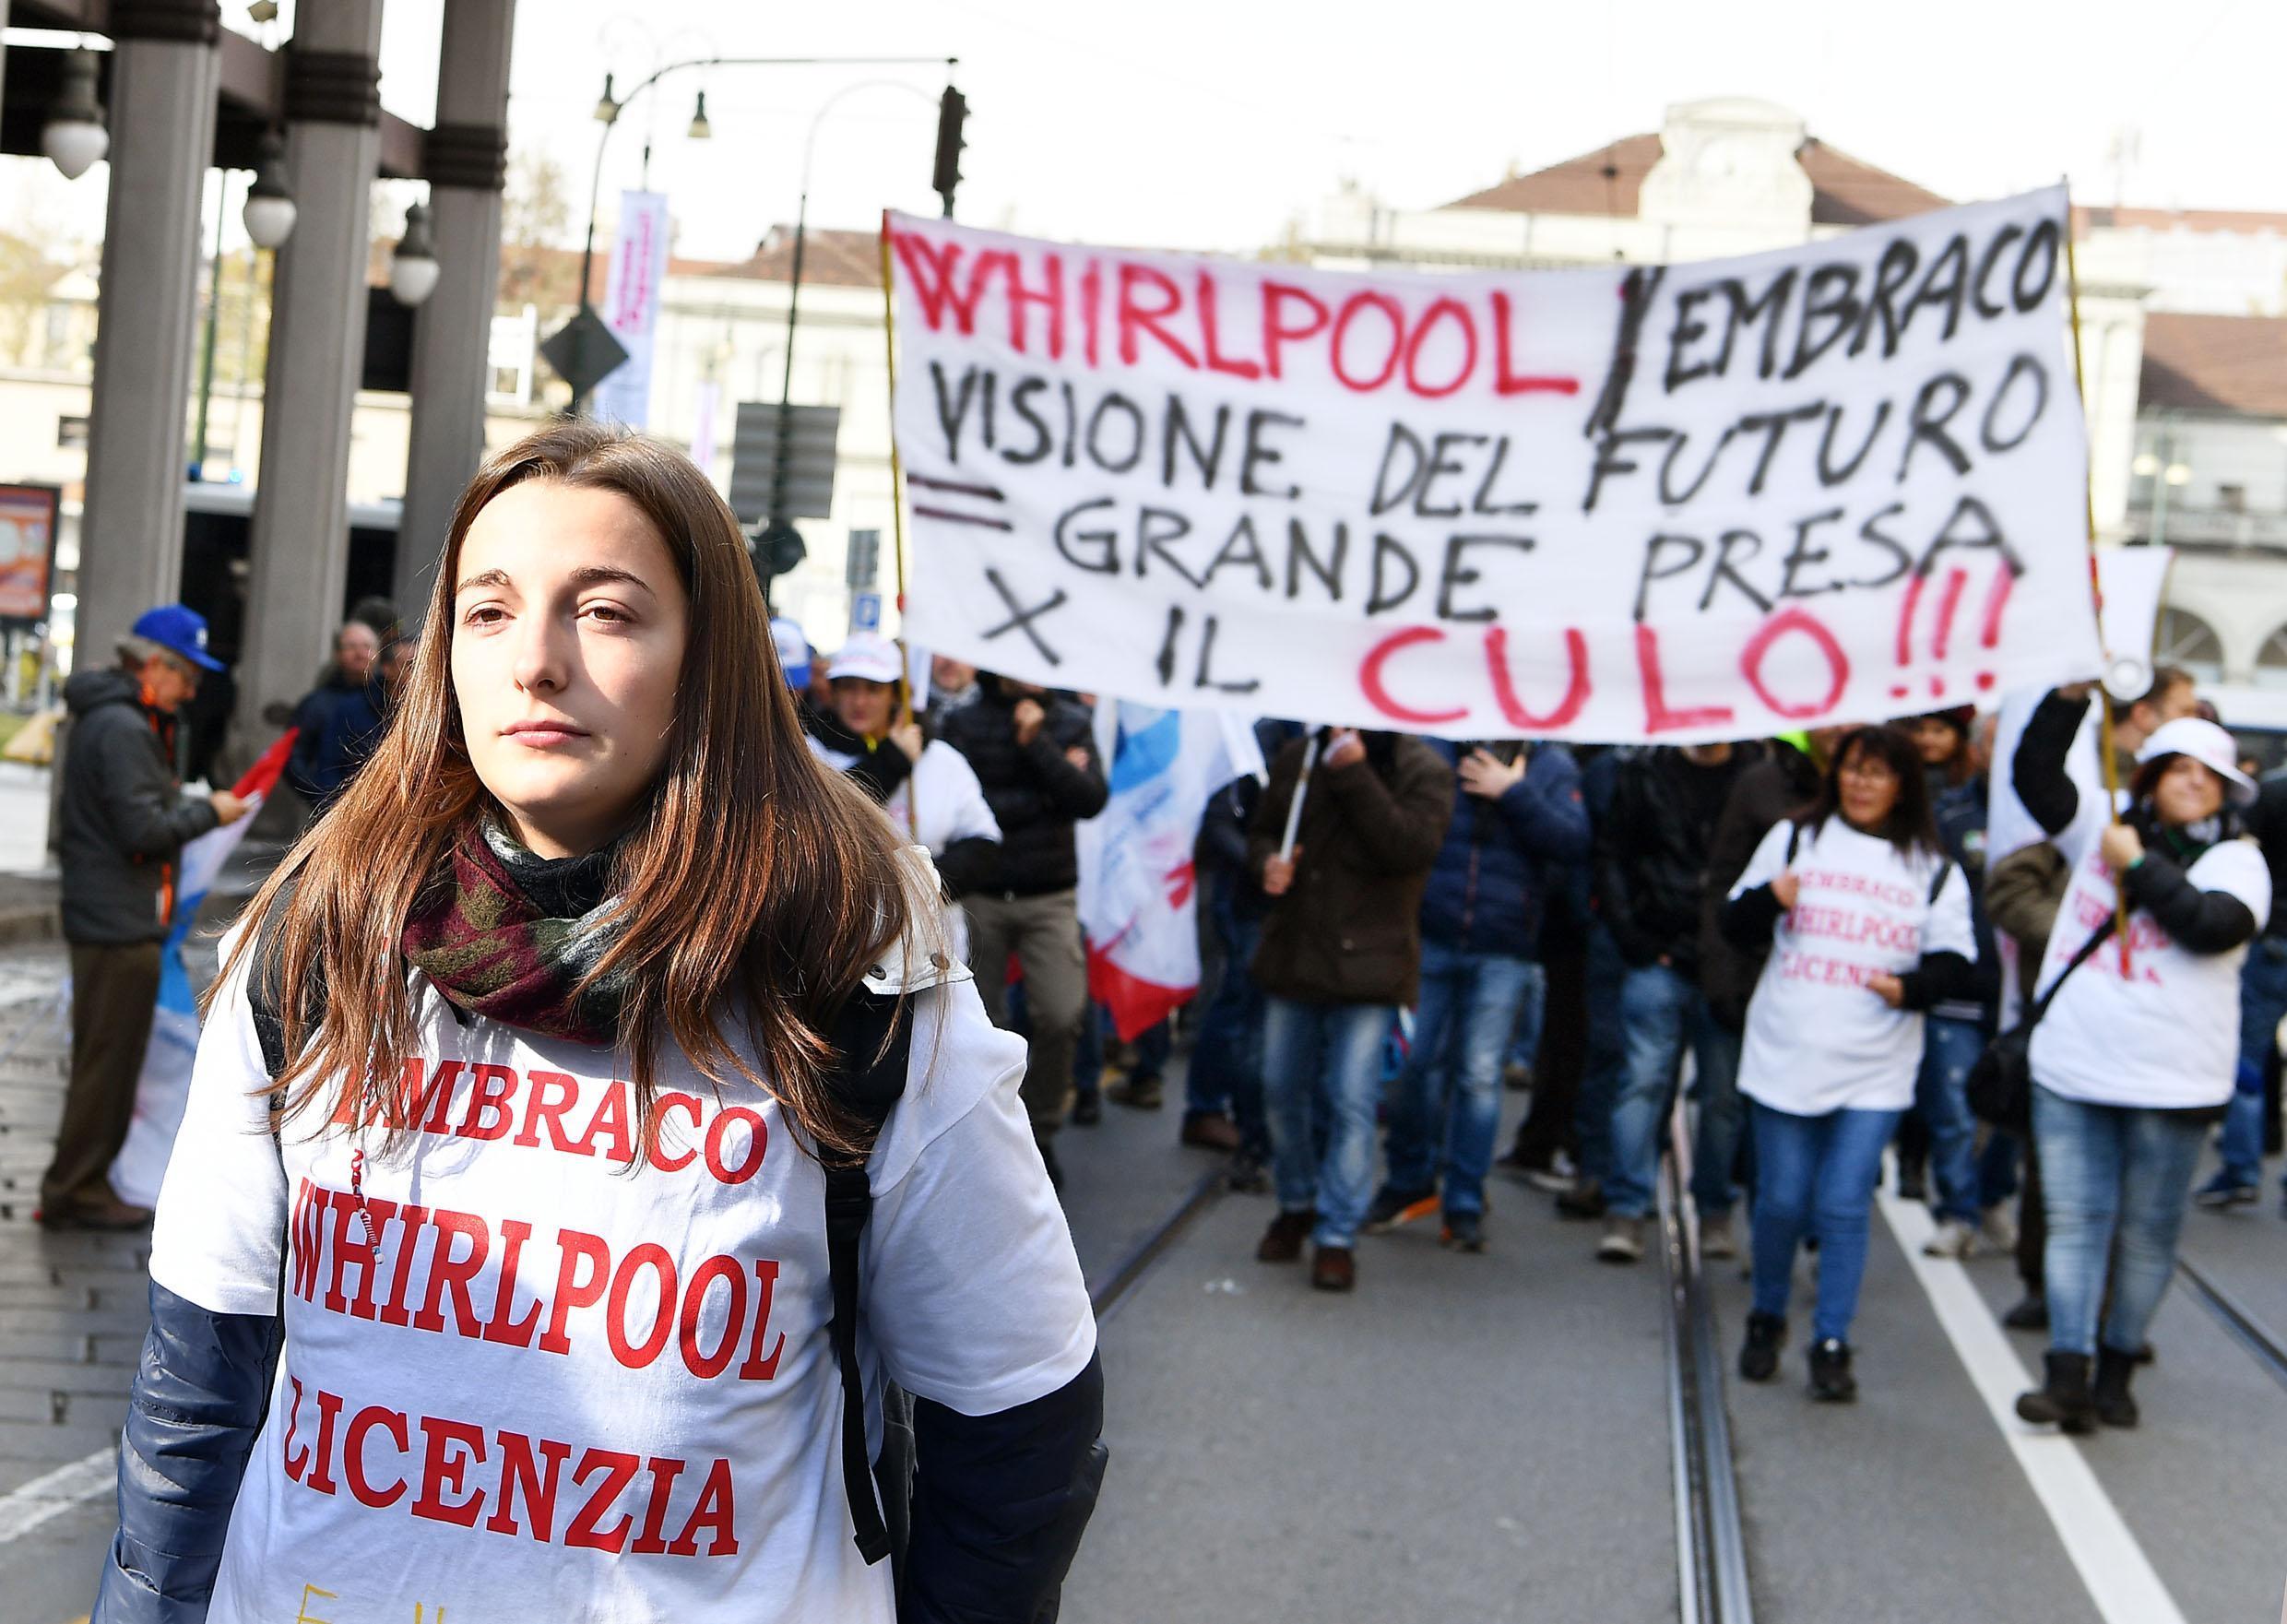 Un momento del corteo dei lavoratori dell'azienda Embraco - Gruppo Whirlpool in occasione dello sciopero contro i licenziamenti sfila per le vie del centro città, Torino, 10 novembre 2017. ANSA/ALESSANDRO DI MARCO